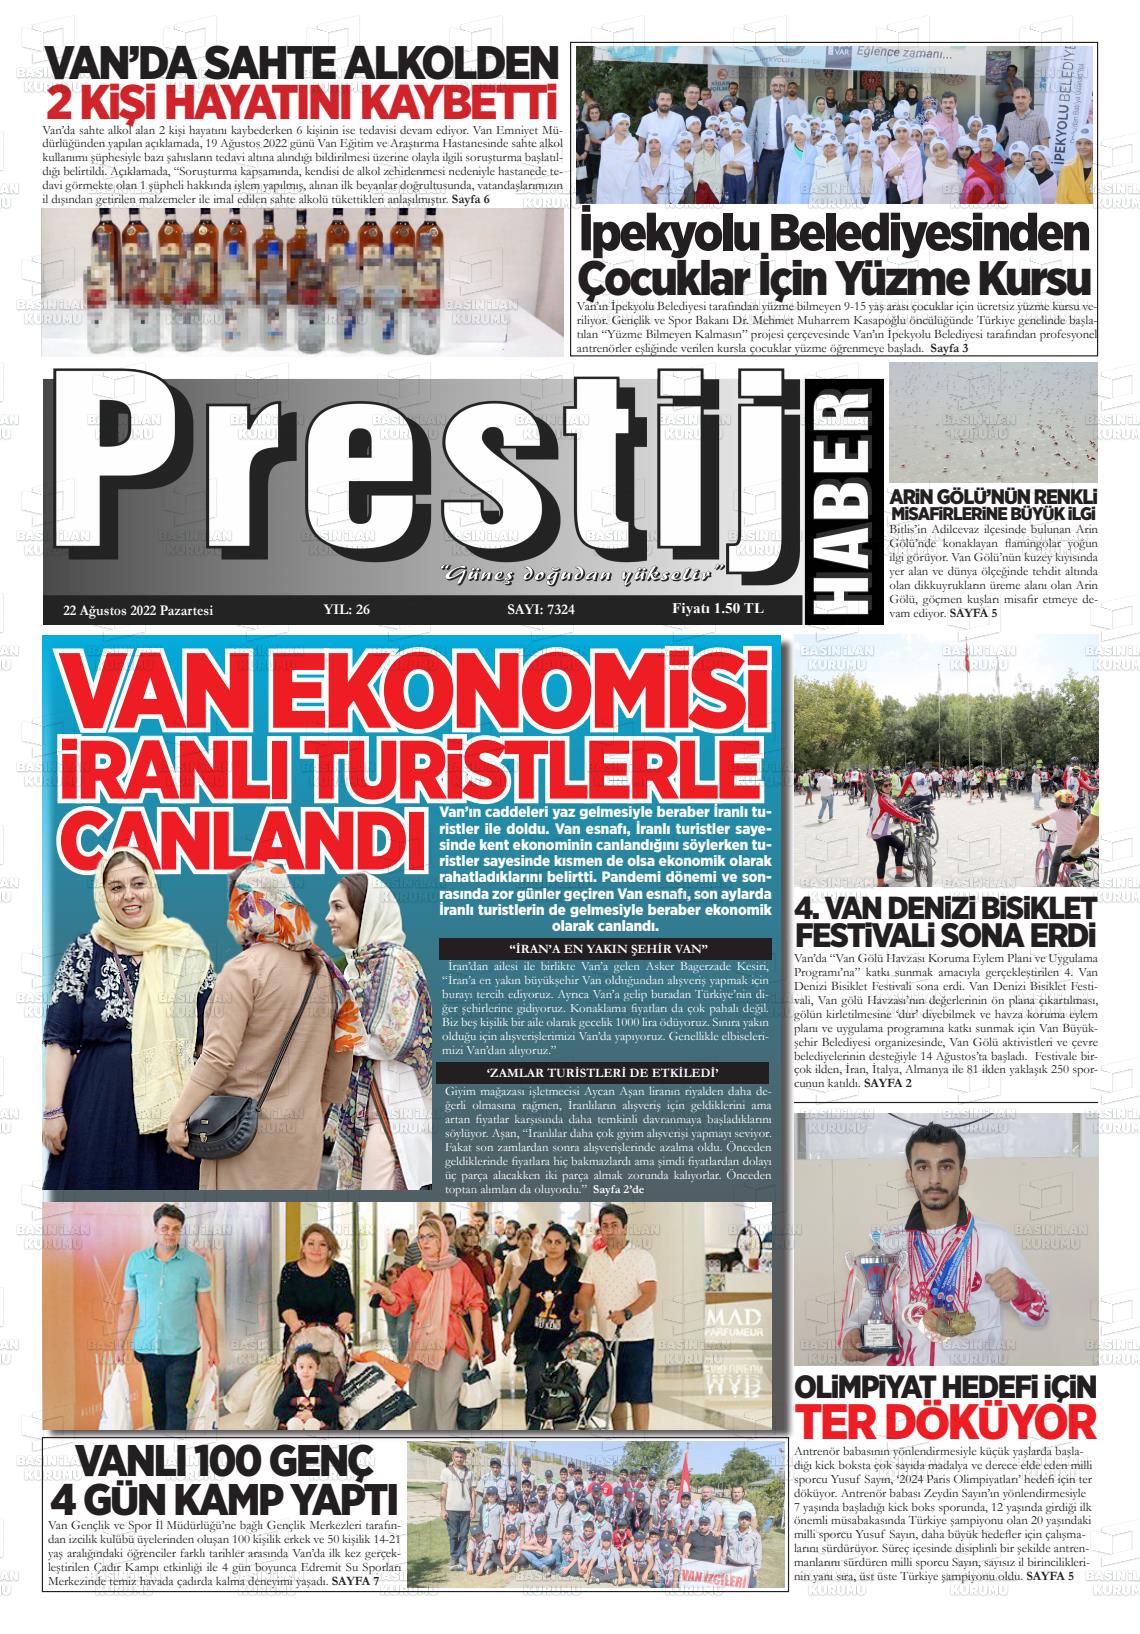 22 Ağustos 2022 Van Prestij Gazete Manşeti